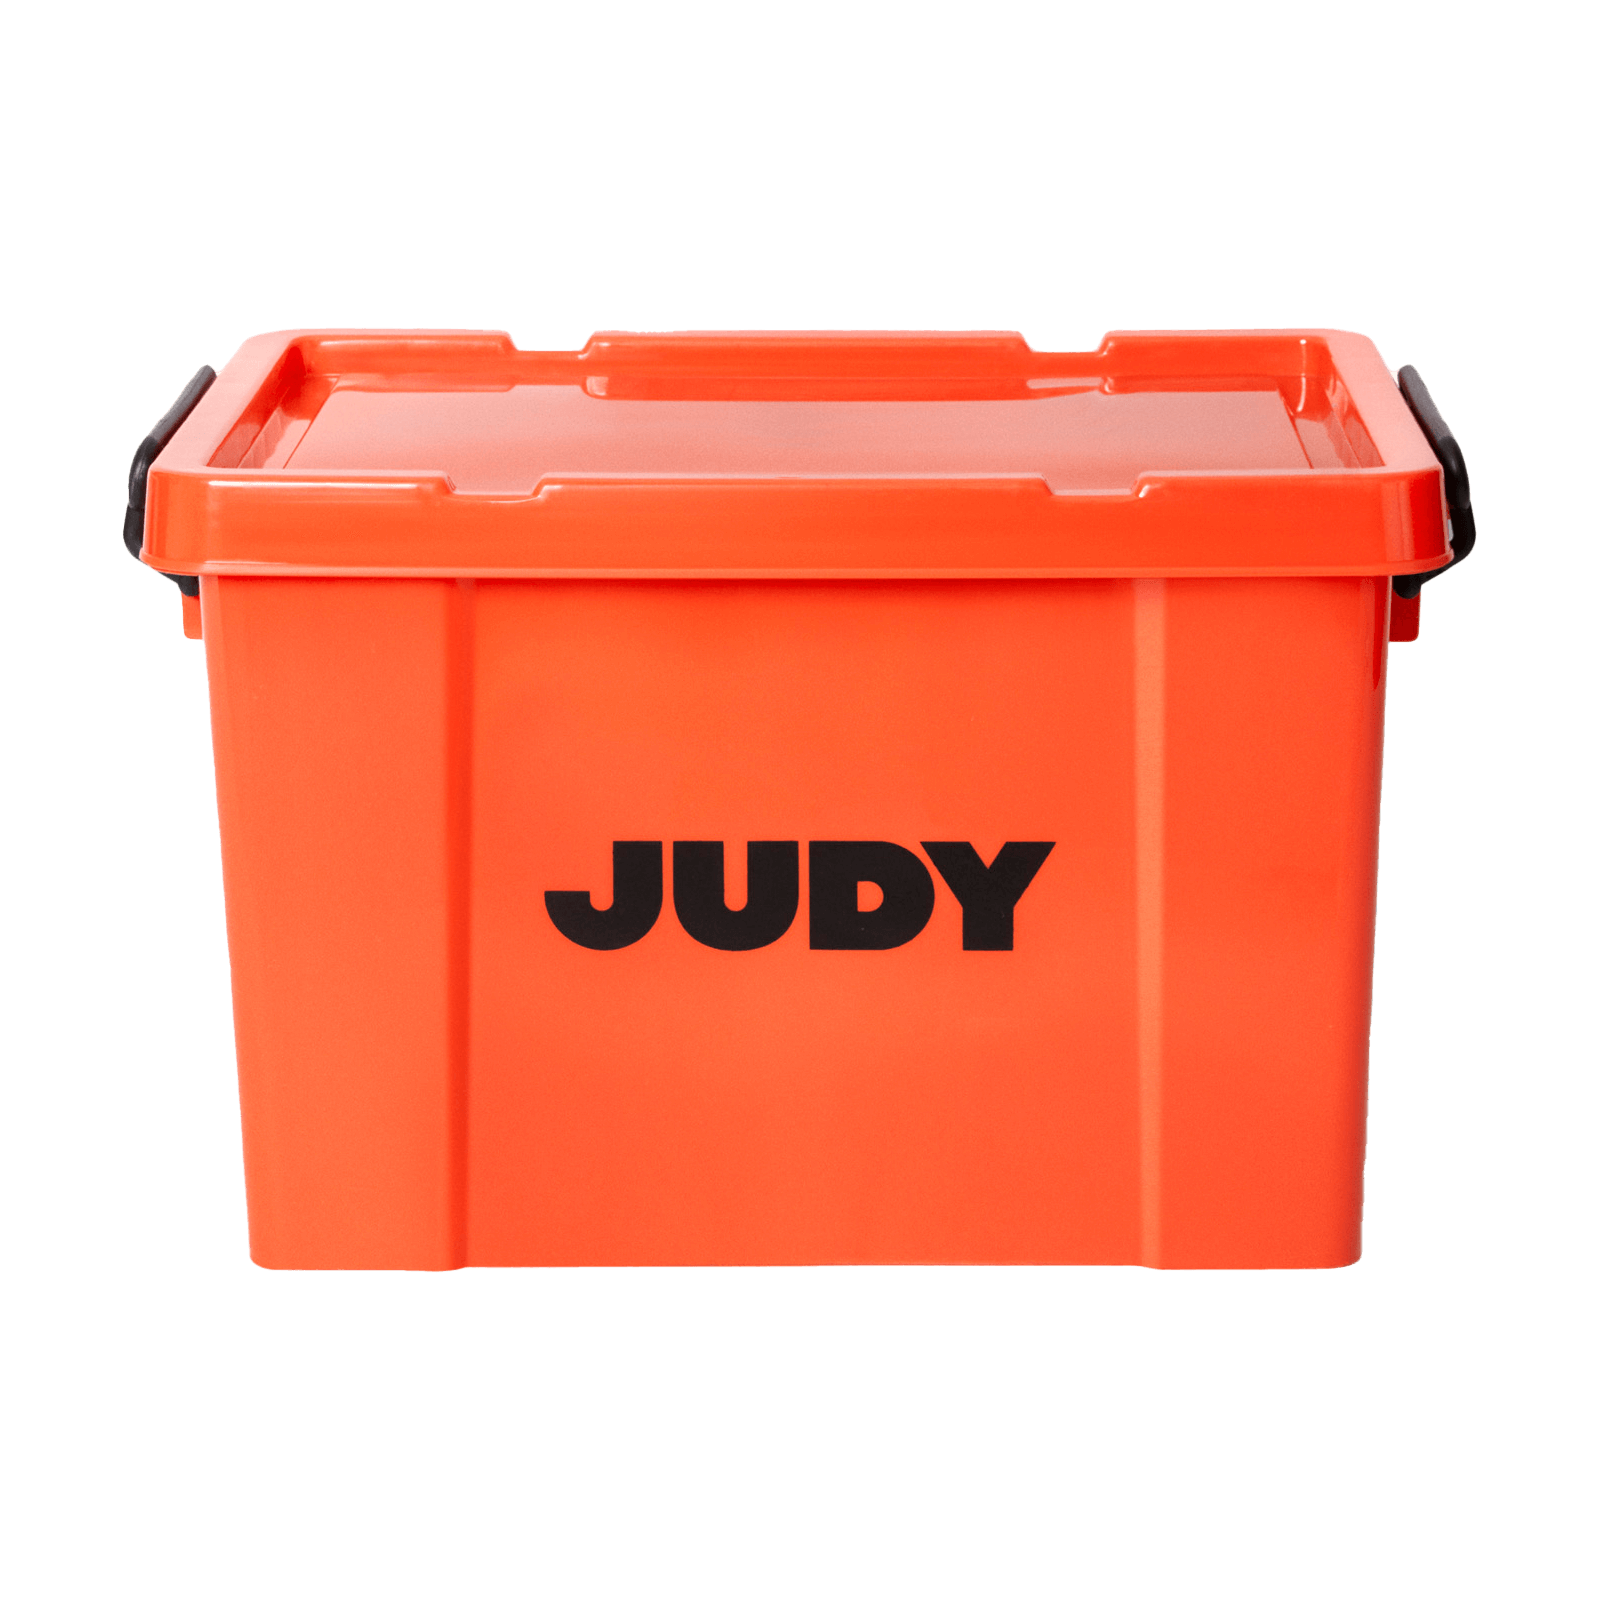 judy emergency preparedness kit